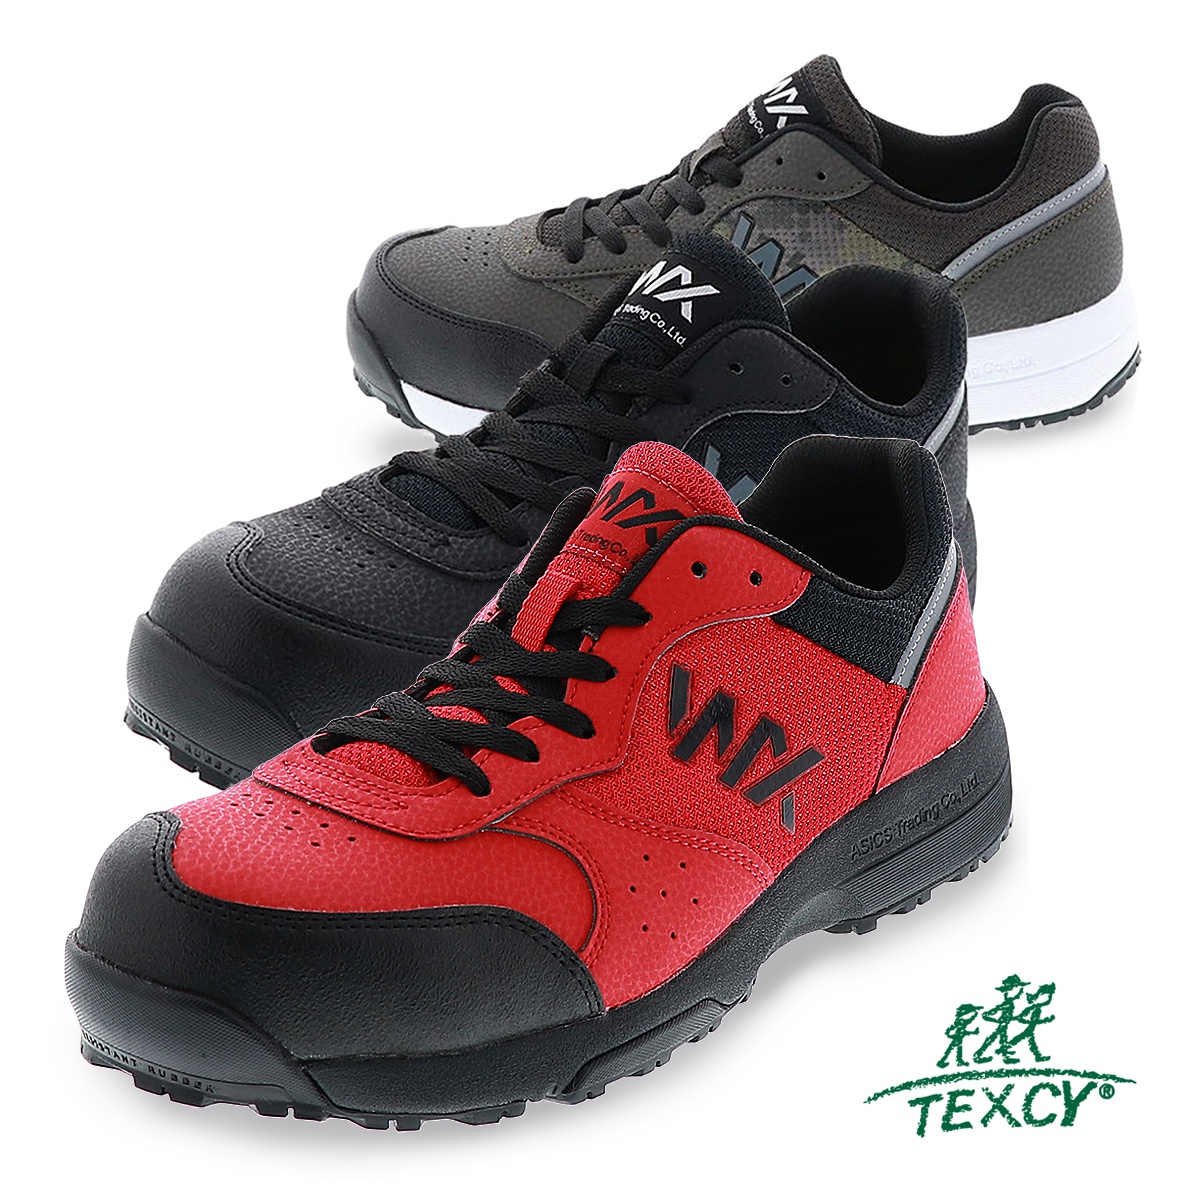 安全靴 TEXCY テクシー アシックス商事 WX-0001 プロテクティブスニーカー 3E相当 屈曲性 軽量性 消臭インソール 紐タイプ レッド  カーキ ブラック :wx-0001:靴のシューマート - 通販 - Yahoo!ショッピング